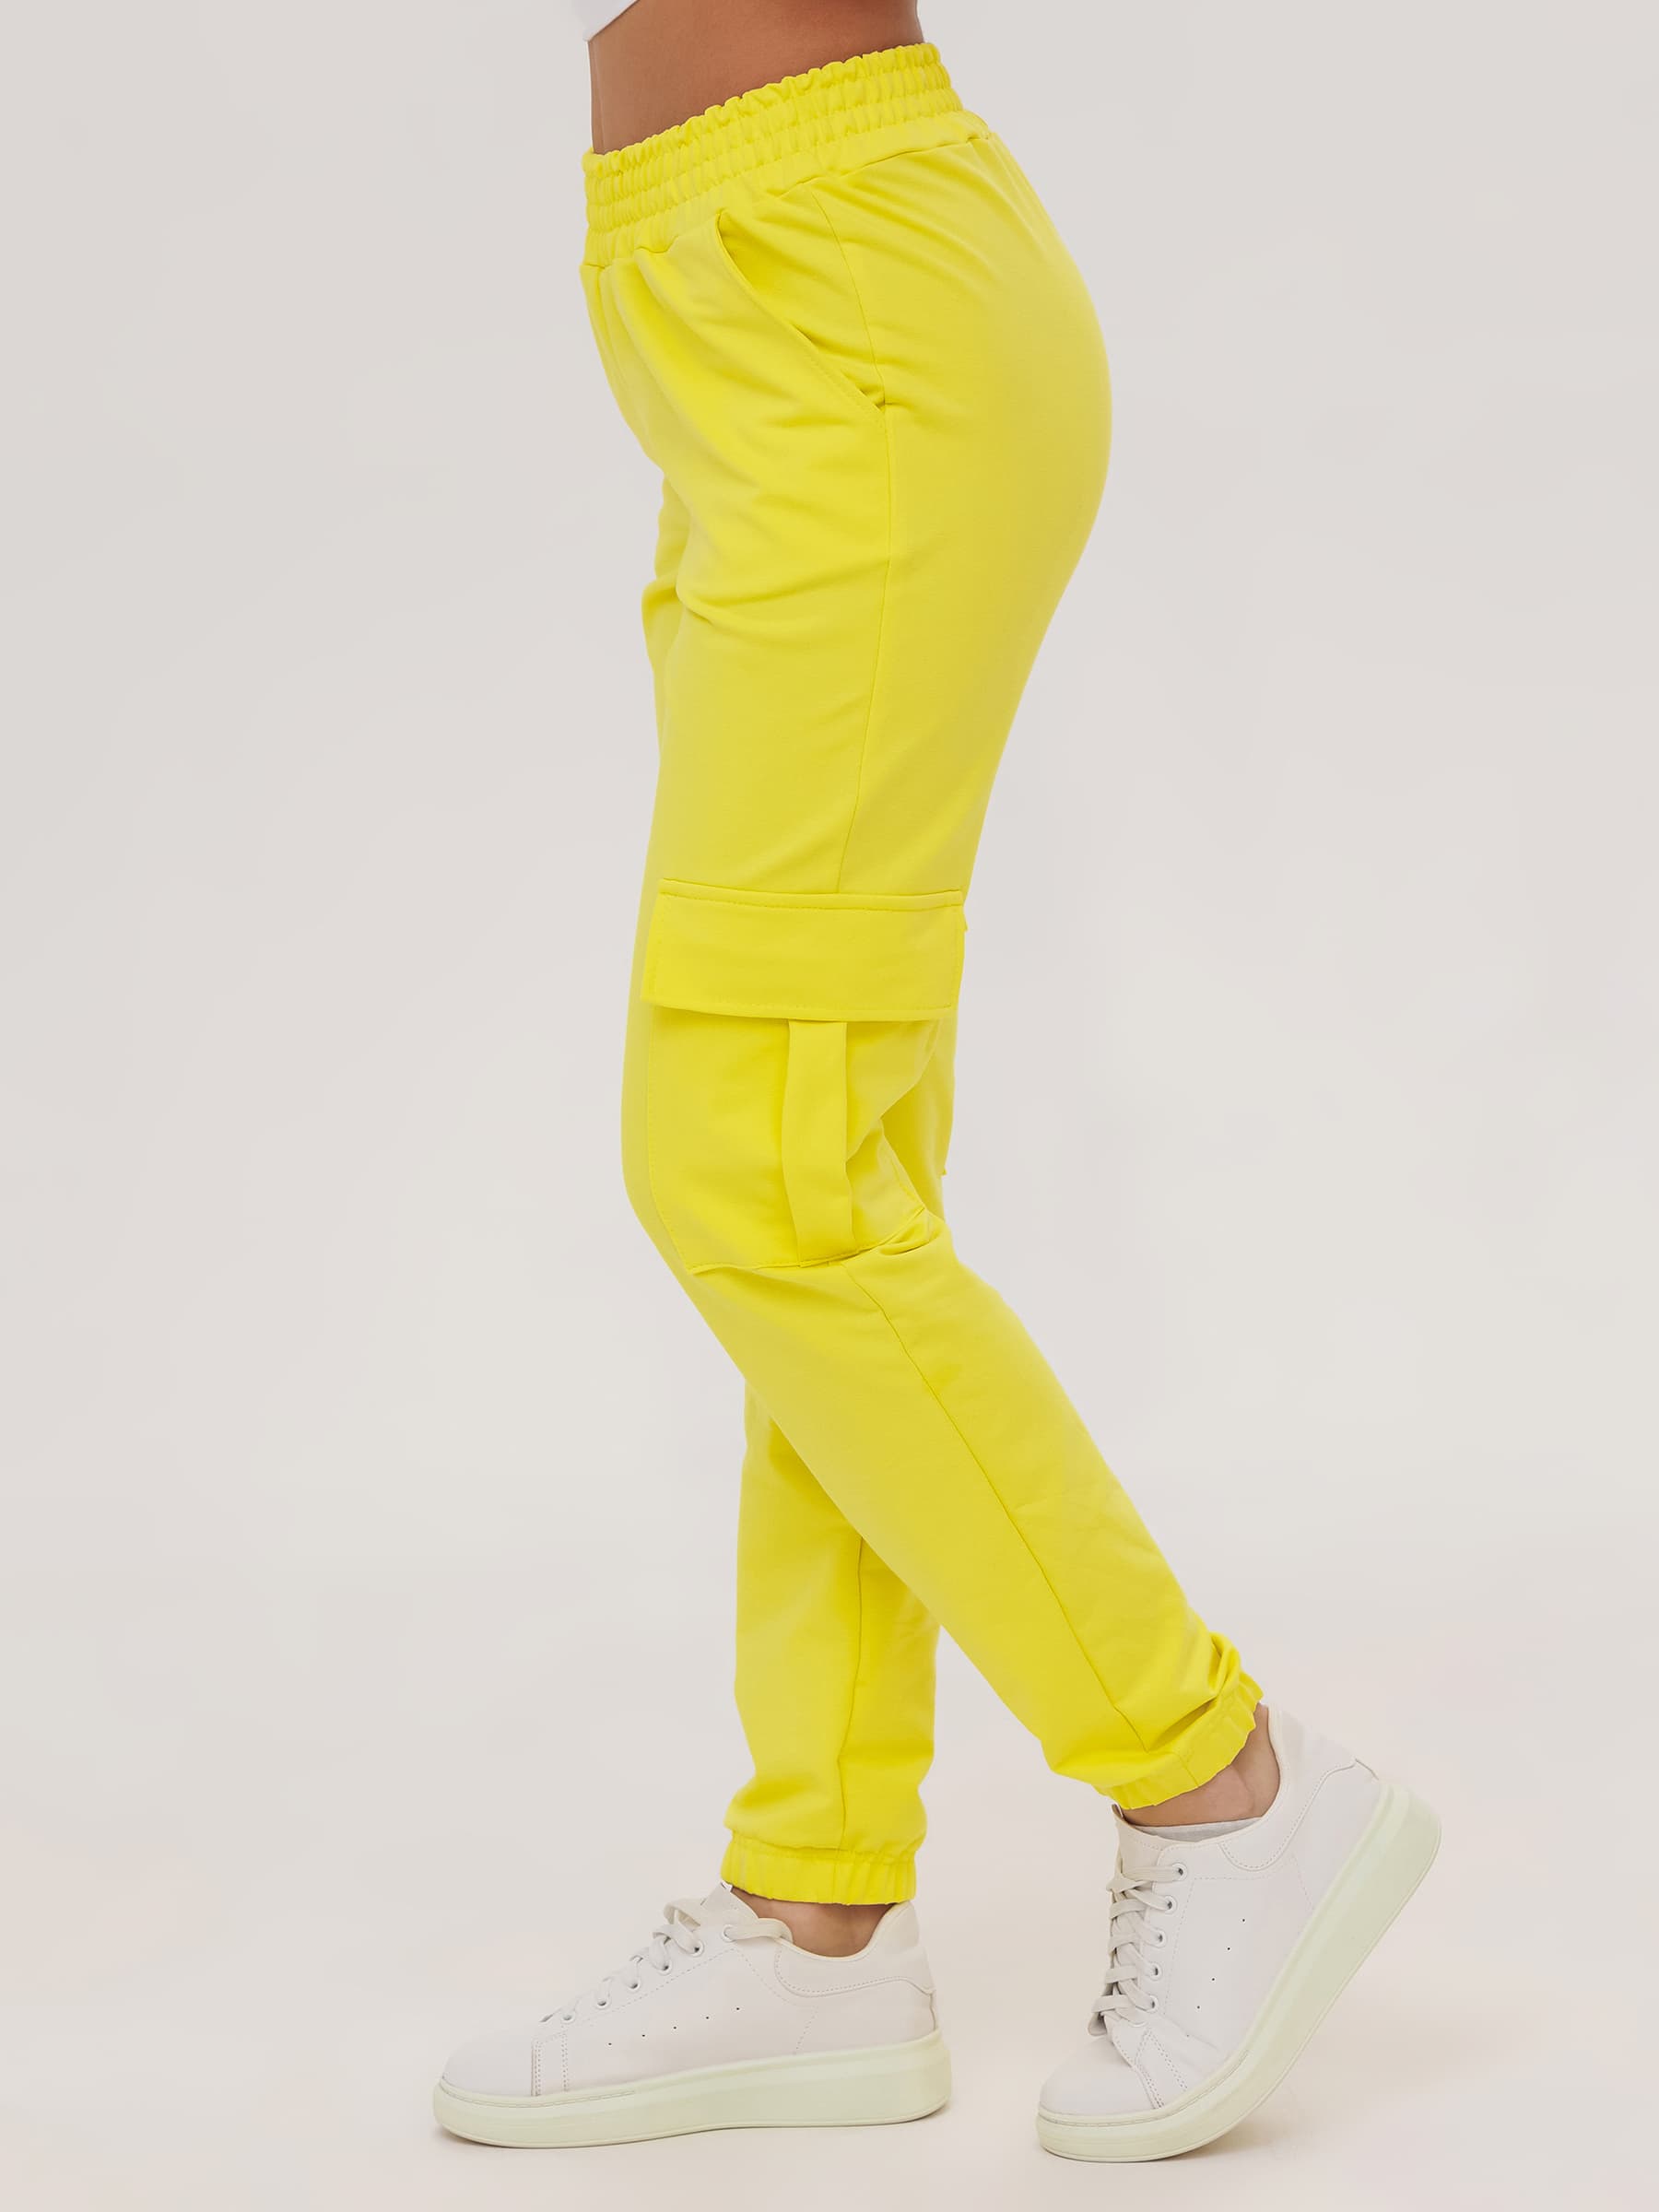 Жен. брюки повседневные арт. 23-0524 Желтый р. 46 Моделлини, размер 46 - фото 5